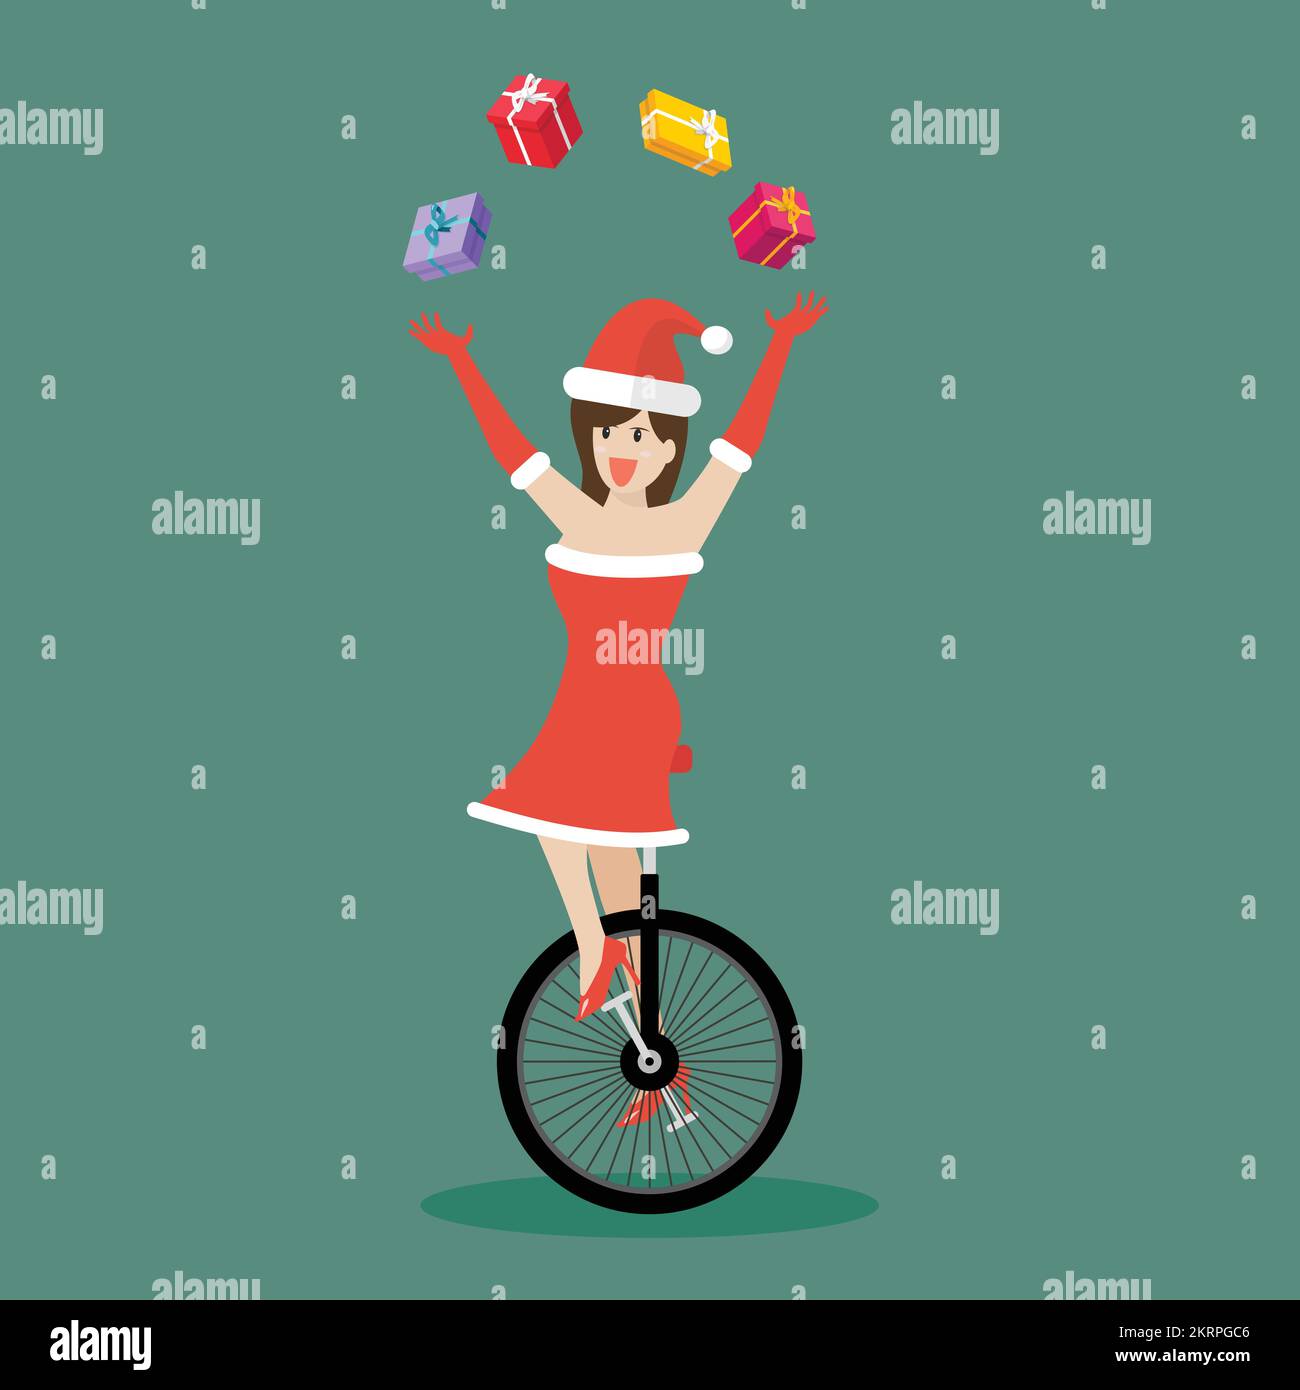 Weihnachtsmann-Mädchen jongliert Geschenkschachteln auf dem Einrad. Frohe Weihnachten. vektordarstellung Stock Vektor